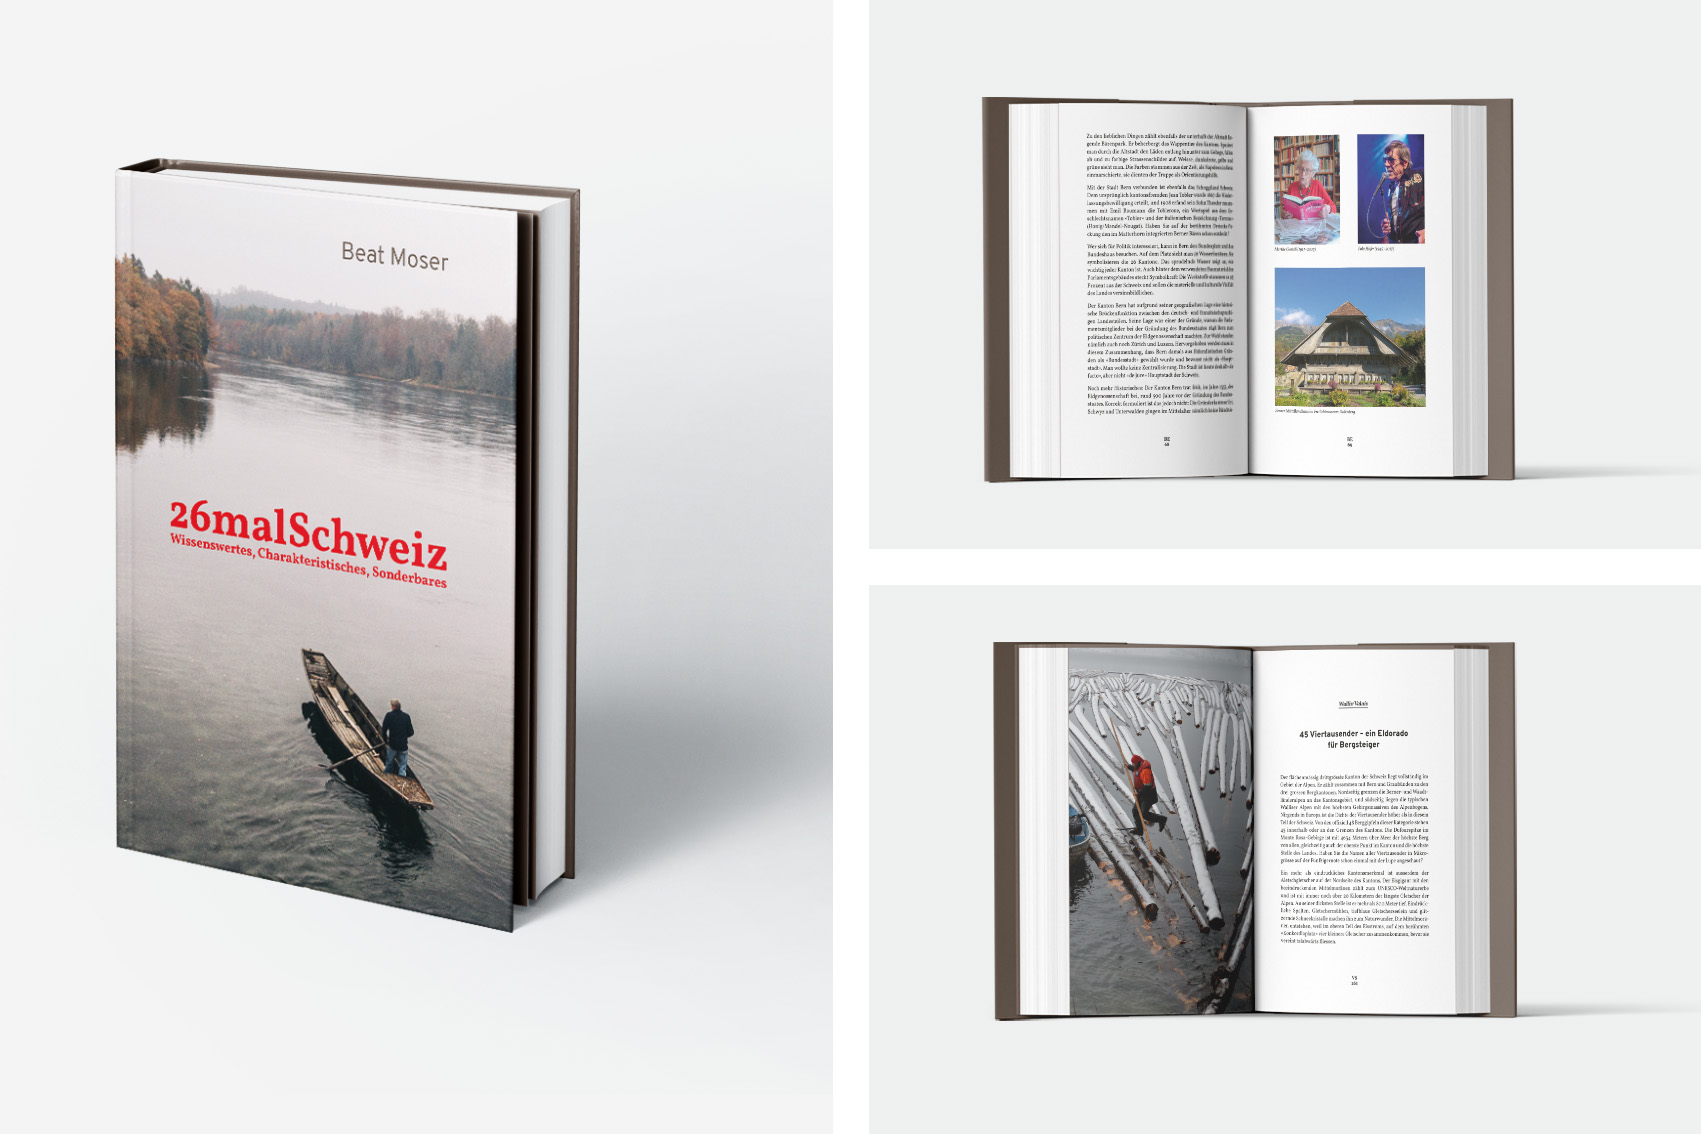 Drei Bilder, die das Buch 26malSchweiz von Beat Moser zeigen. Man sieht die Vorderseite und zwei verschiedene Innenseiten.